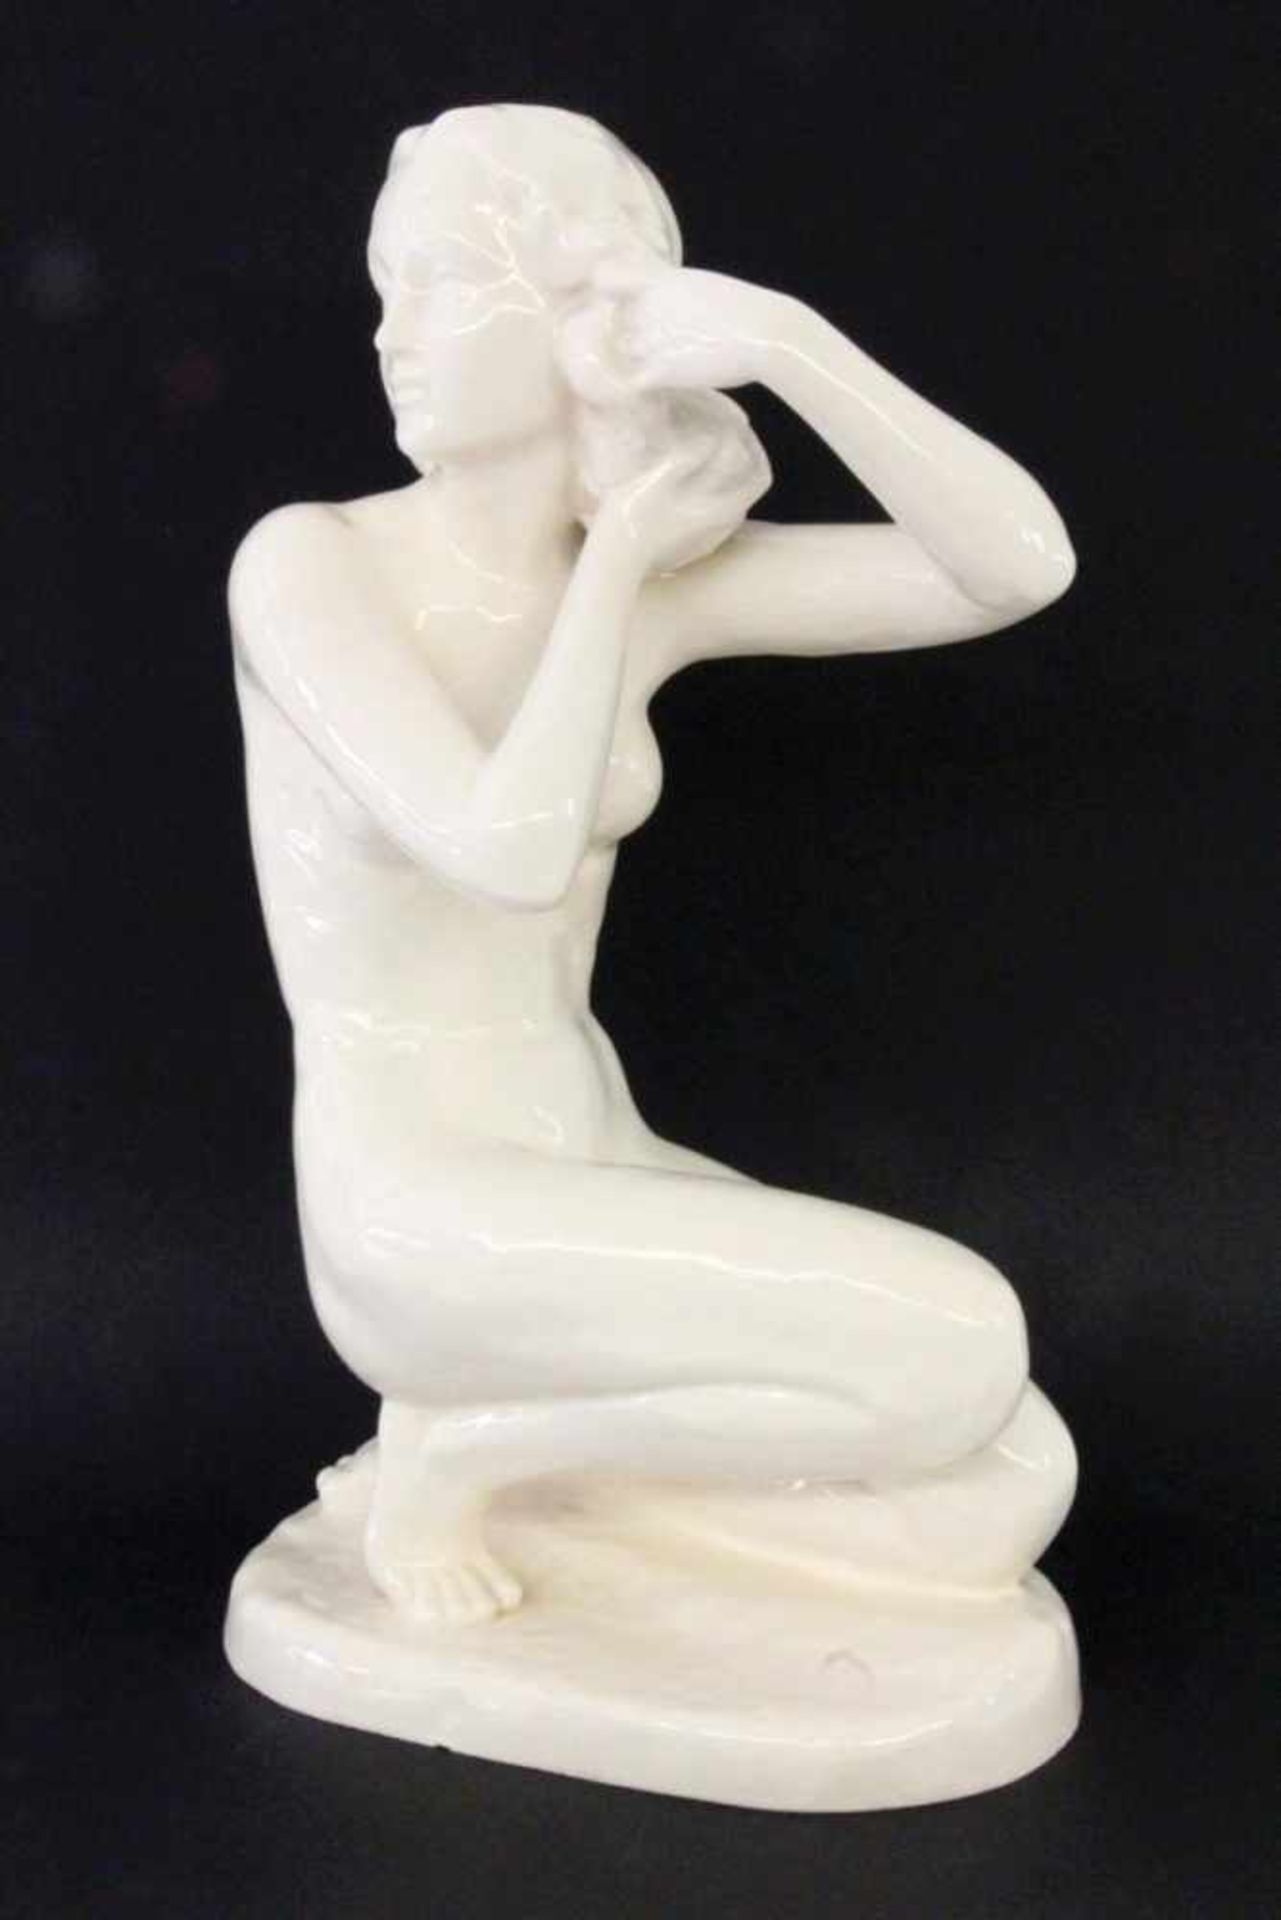 KNIENDER AKT1930er/40er Jahre Weiß glasierte Keramikfigur. Gemarkt. H.39cmA KNEELING NUDE 1930s/